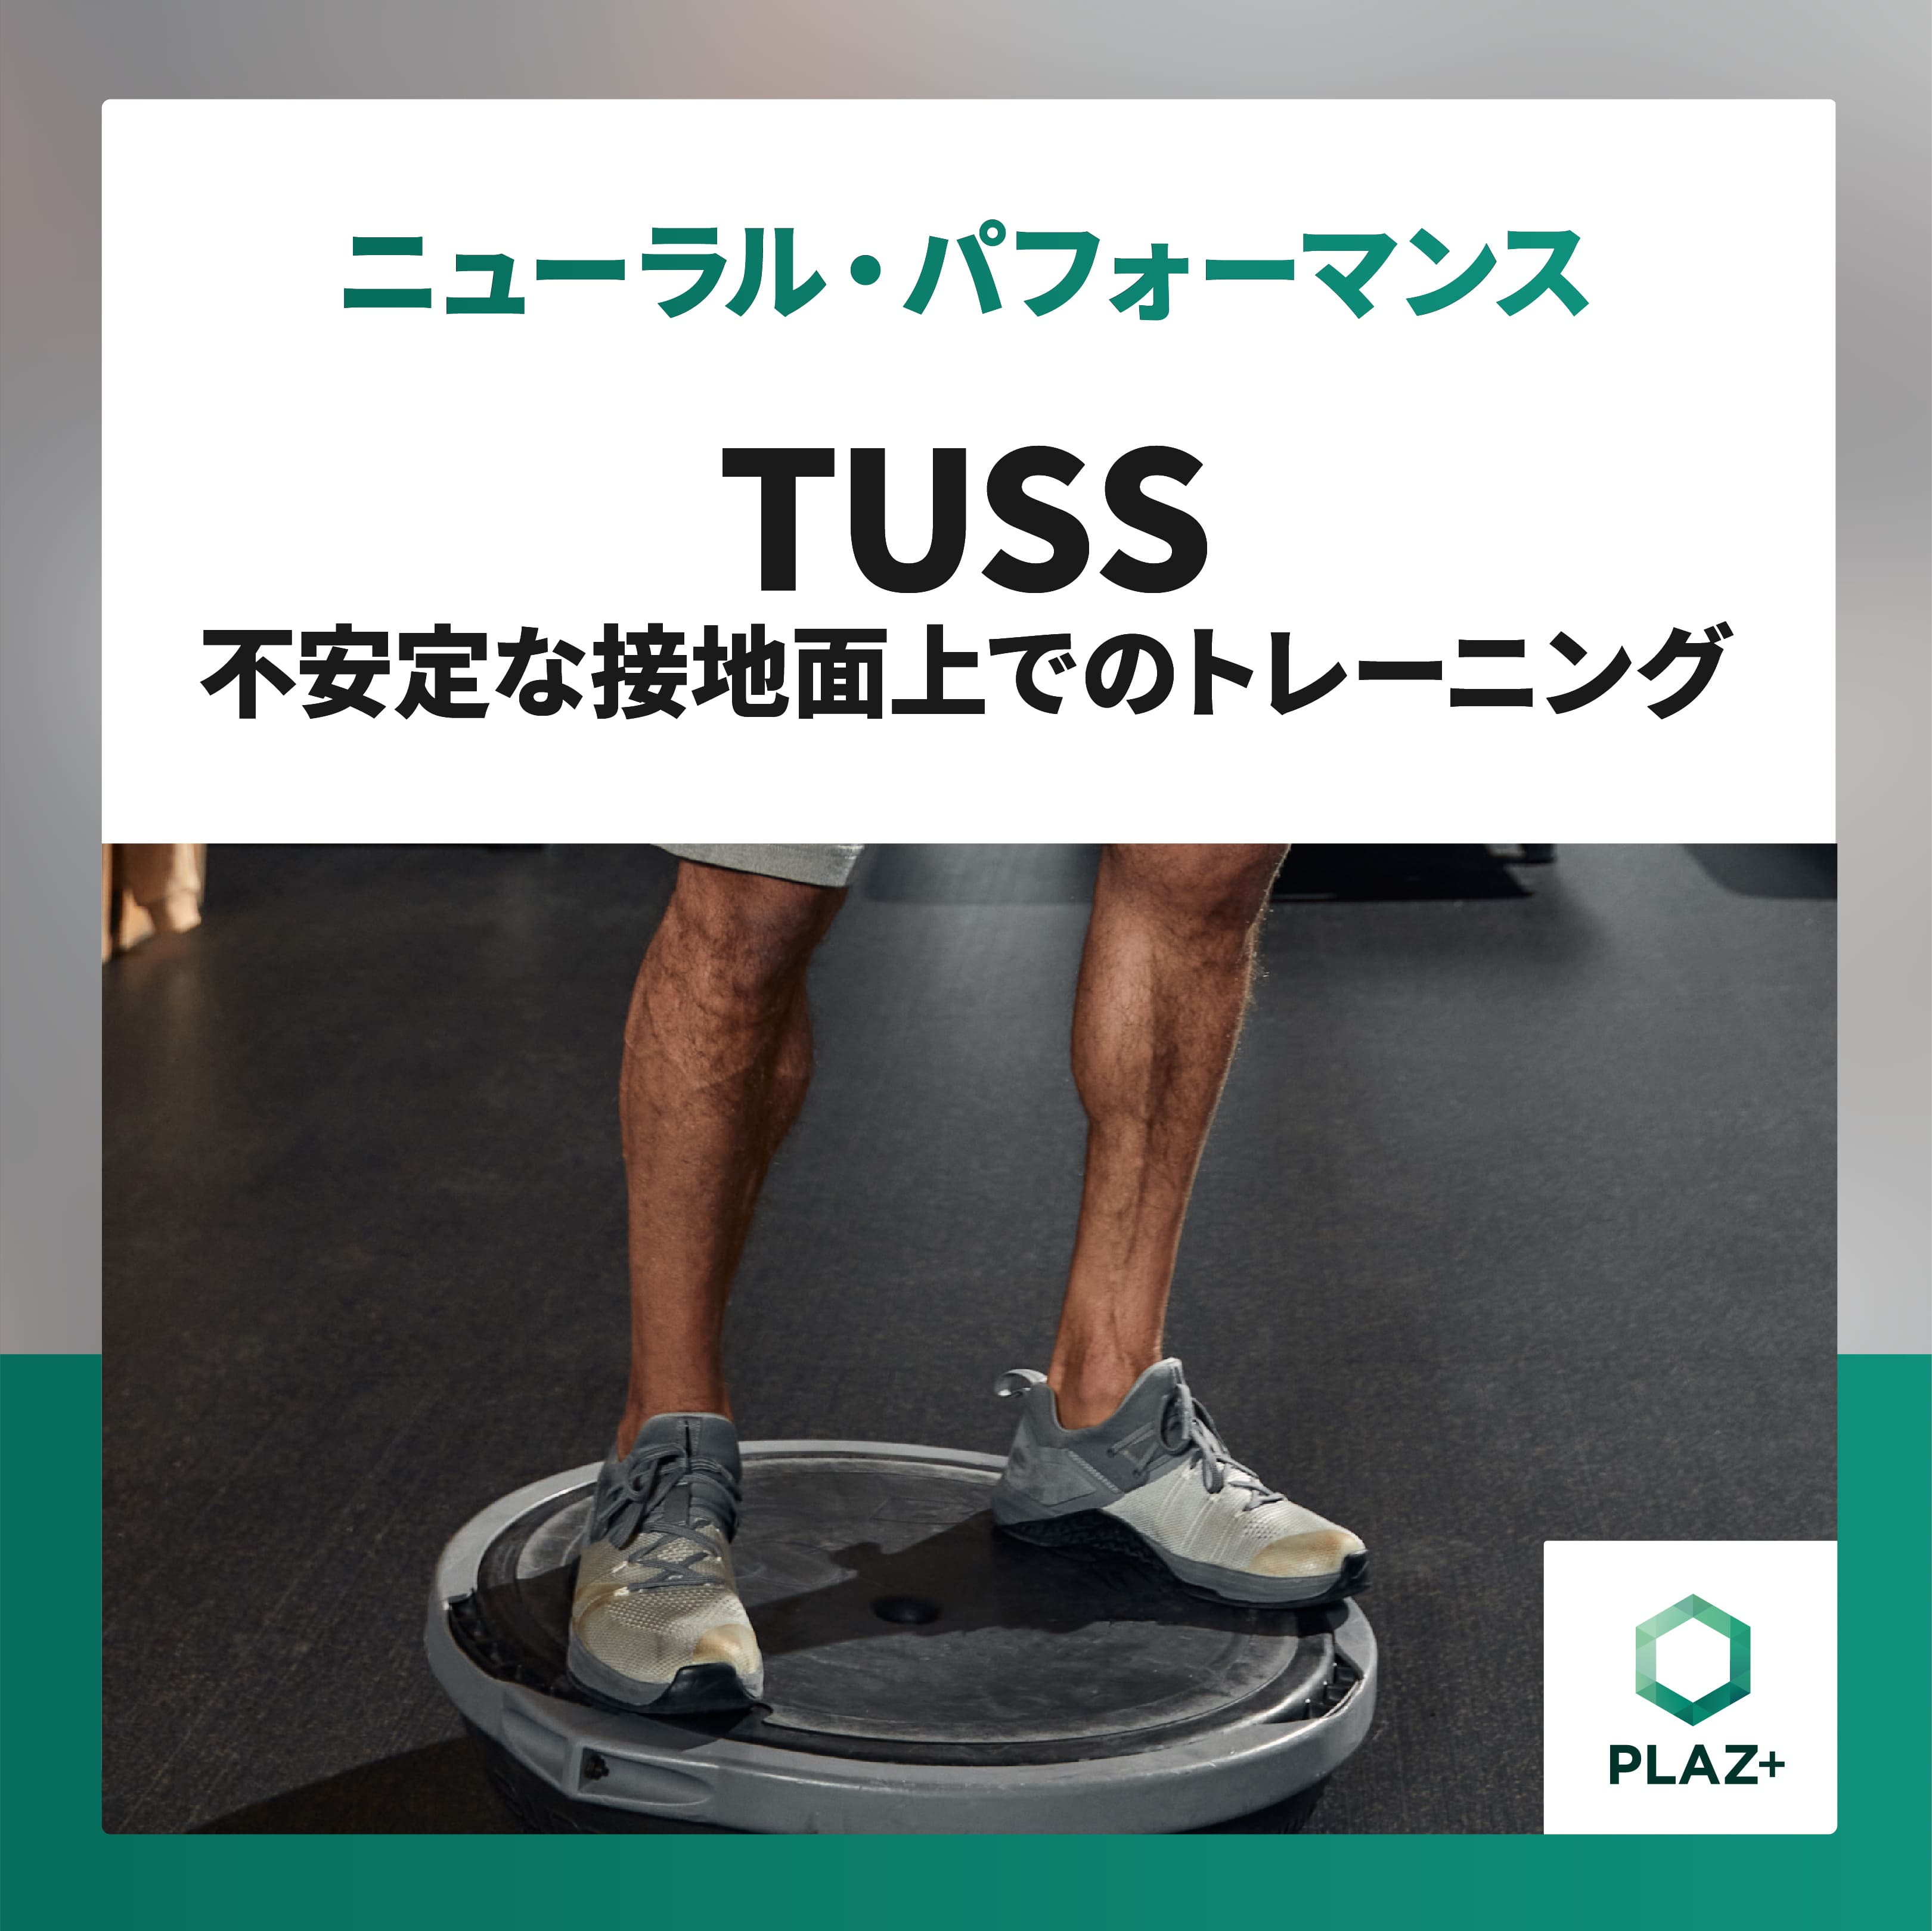 TUSS - 不安定な接地面上でのトレーニング